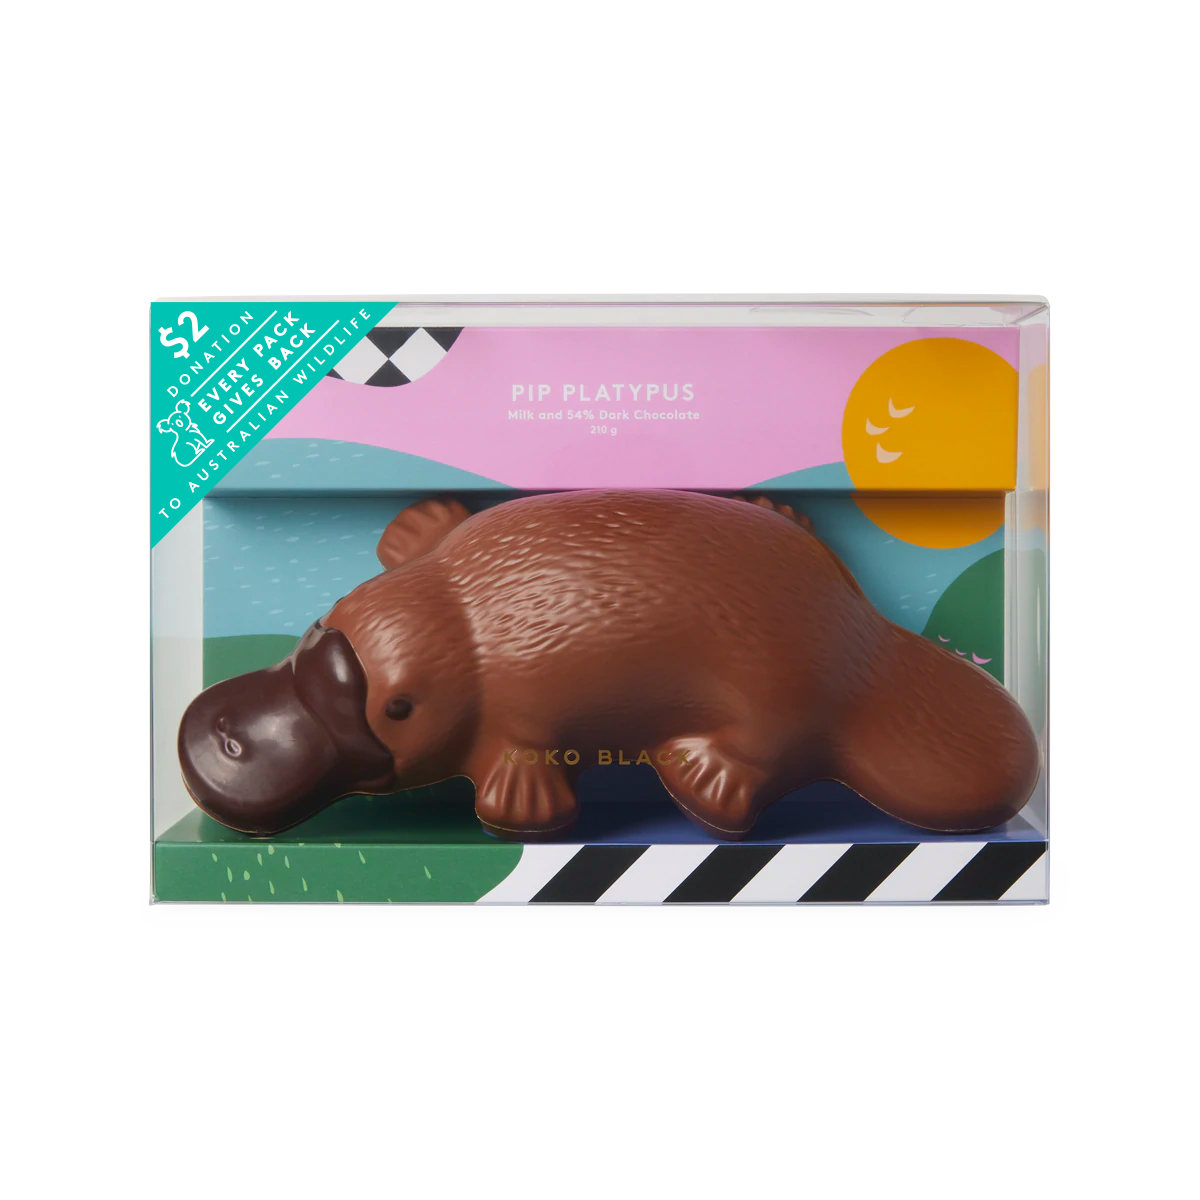 Pip Platypus | Milk Chocolate